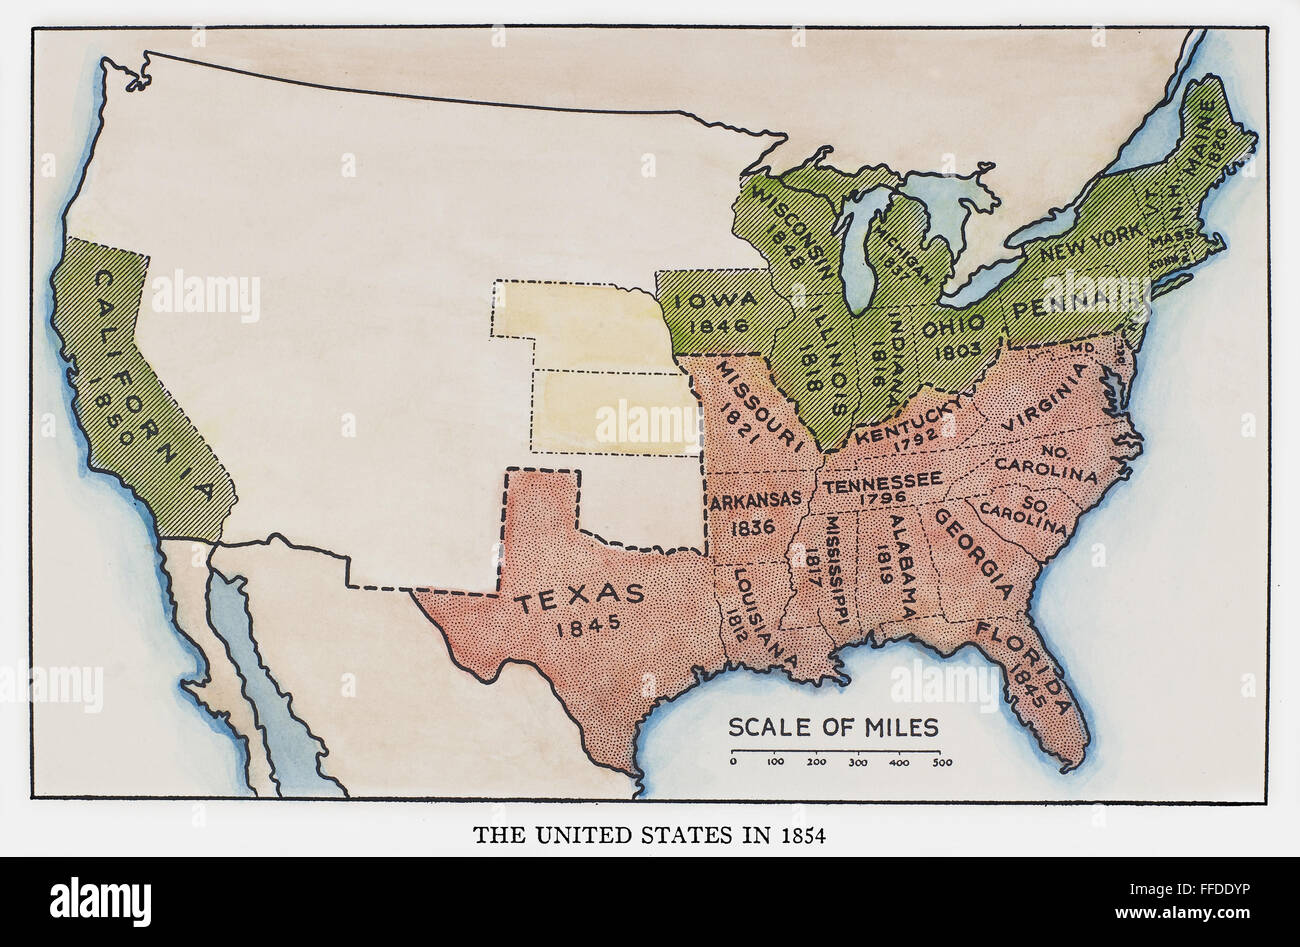 USA KARTE, 1854. /nMap der Vereinigten Staaten zur Zeit des Kansas-Nebraska Act 1854, zeigt Slave-Staaten (rot), frei (grün), und den zukünftigen Staaten Kansas und Nebraska (gelb). Stockfoto